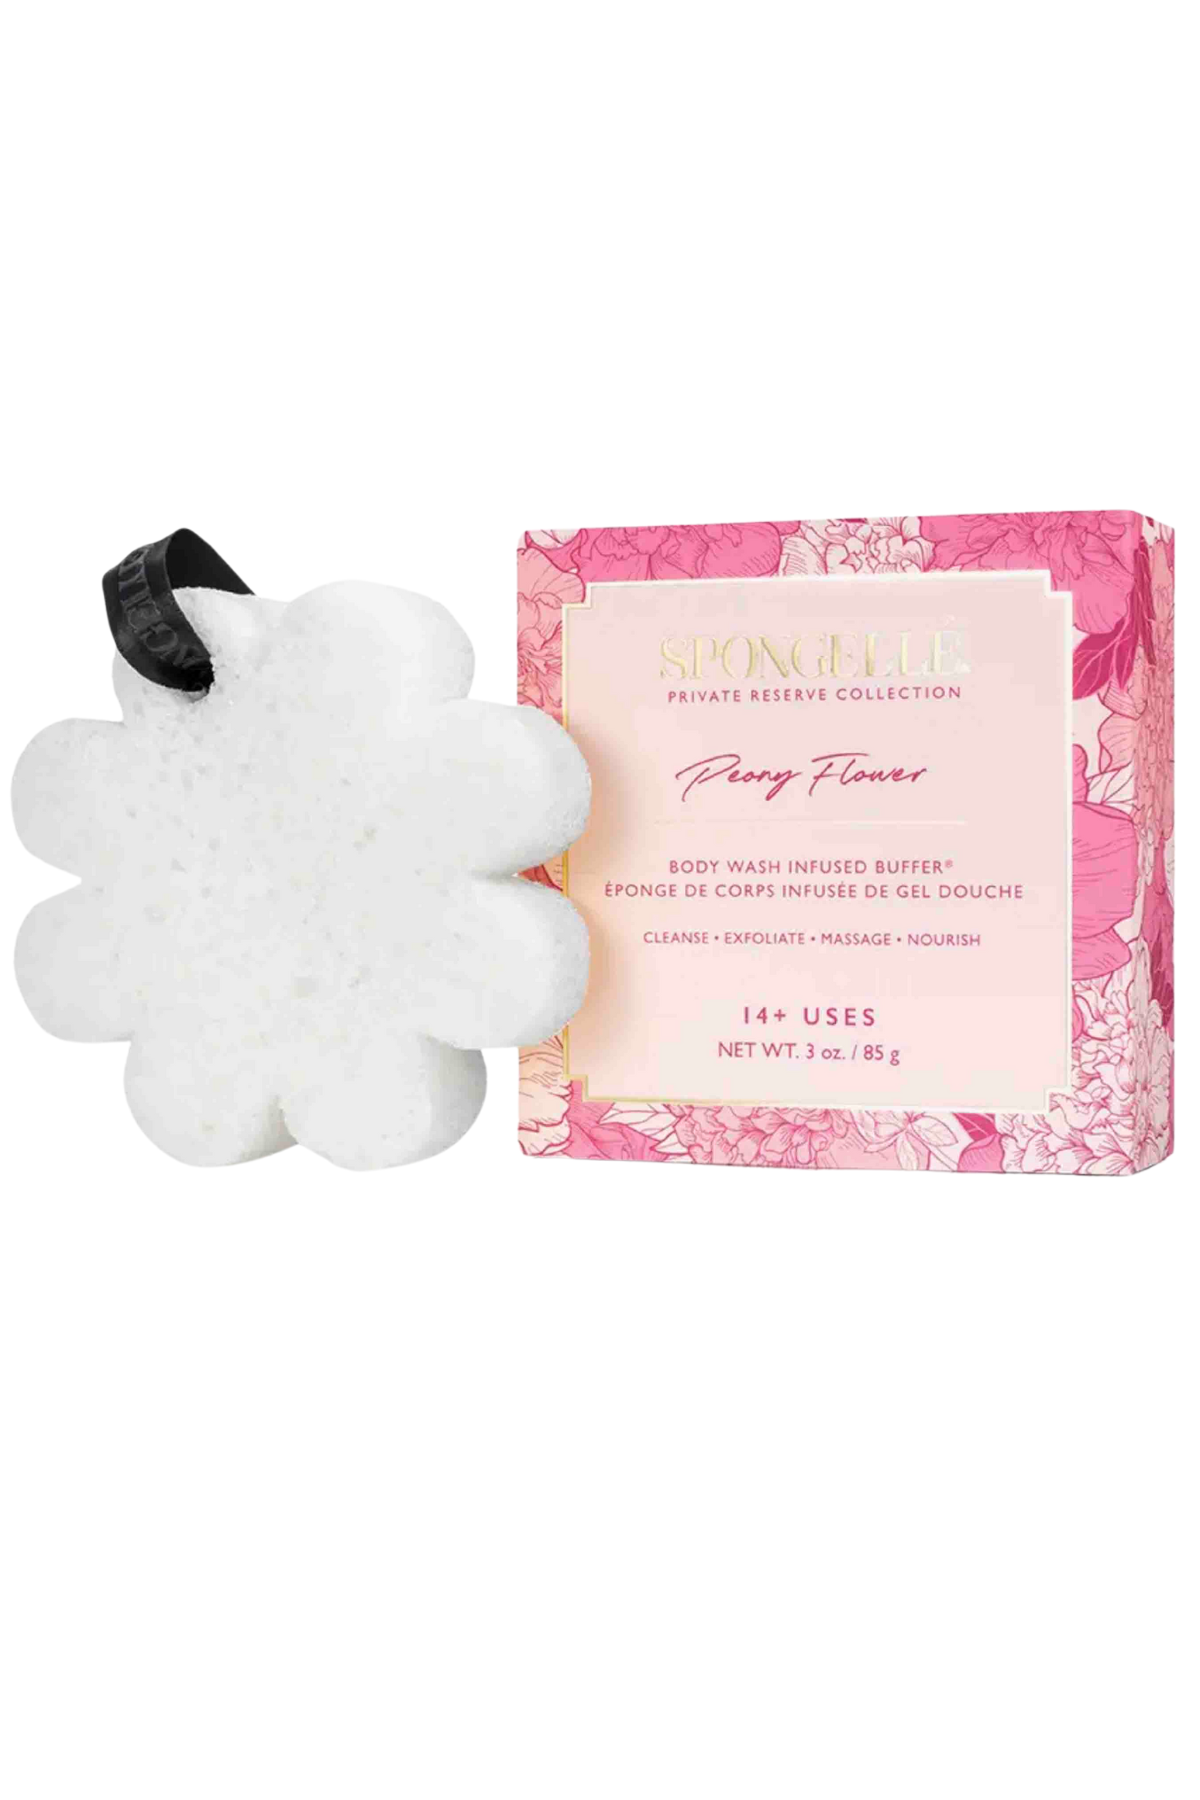 Spongellé Peony Flower Body Buffer Box with Sponge